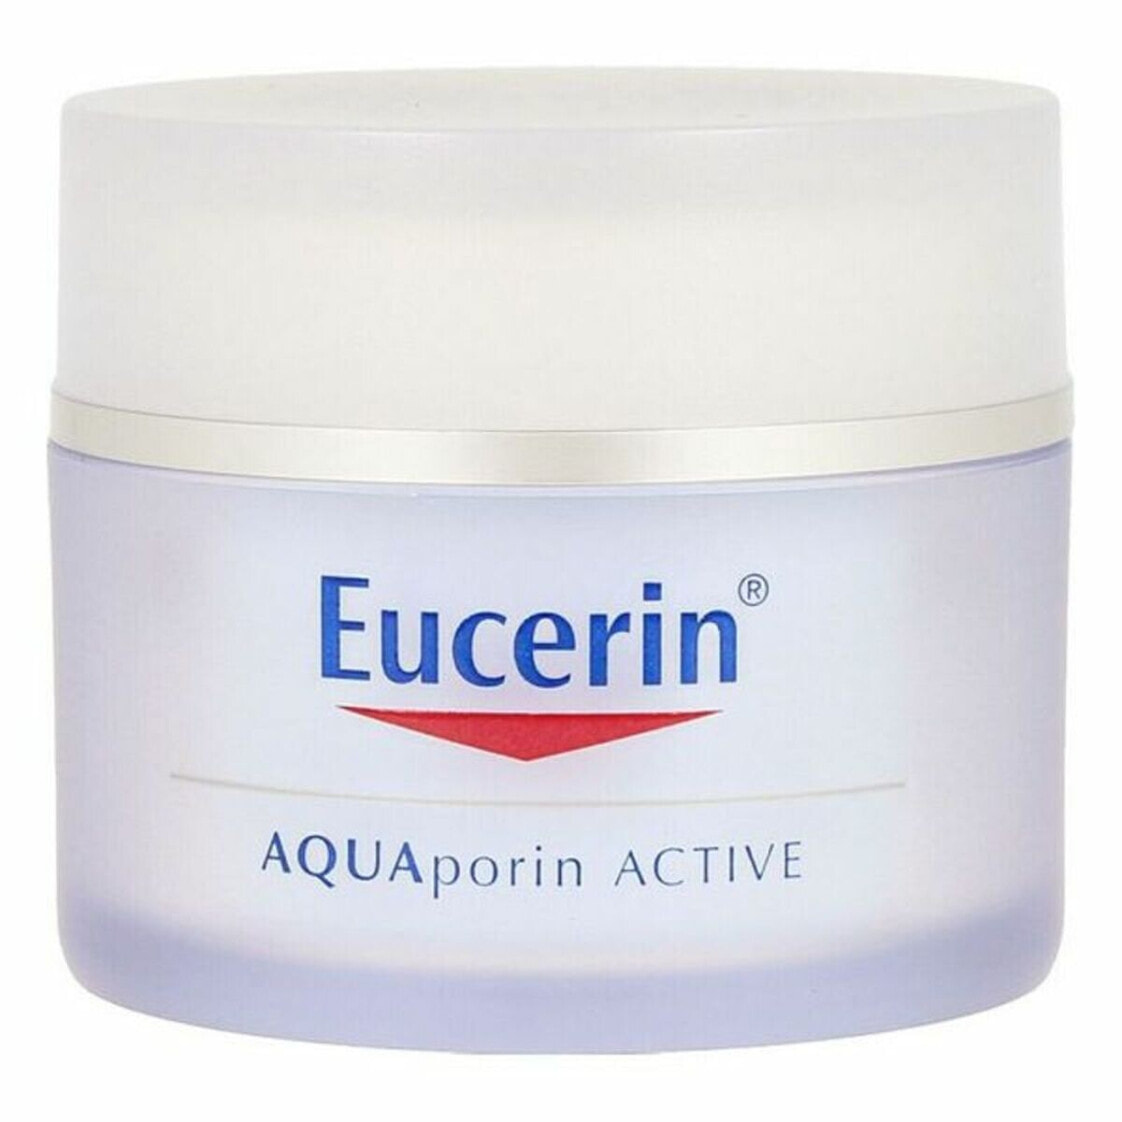 Купить крем эуцерин. Eucerin Aquaporin Active. Eucerin крем. Eucerin крем для лица увлажняющий. Aquaporin Hydrating Cream.